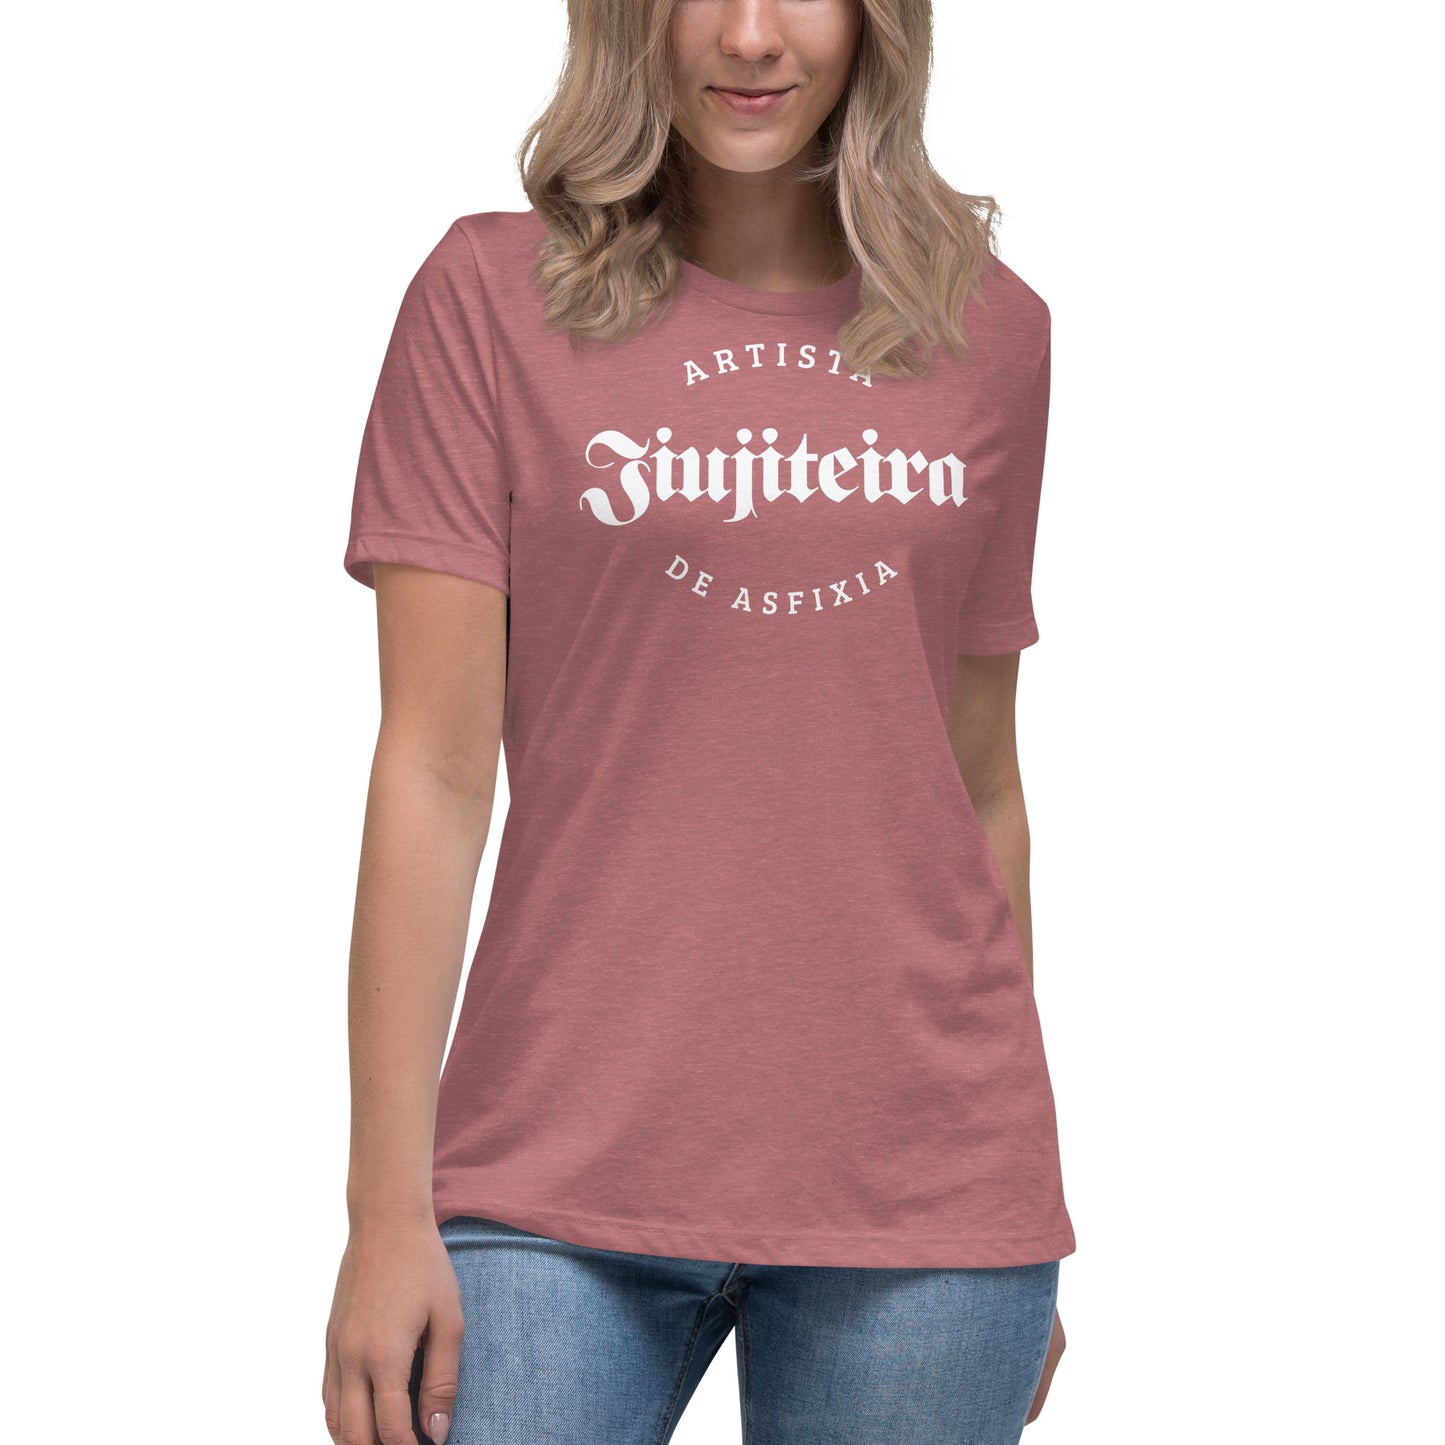 Women's Relaxed T-Shirt- Jiujiteira Asrtista De Asfixia